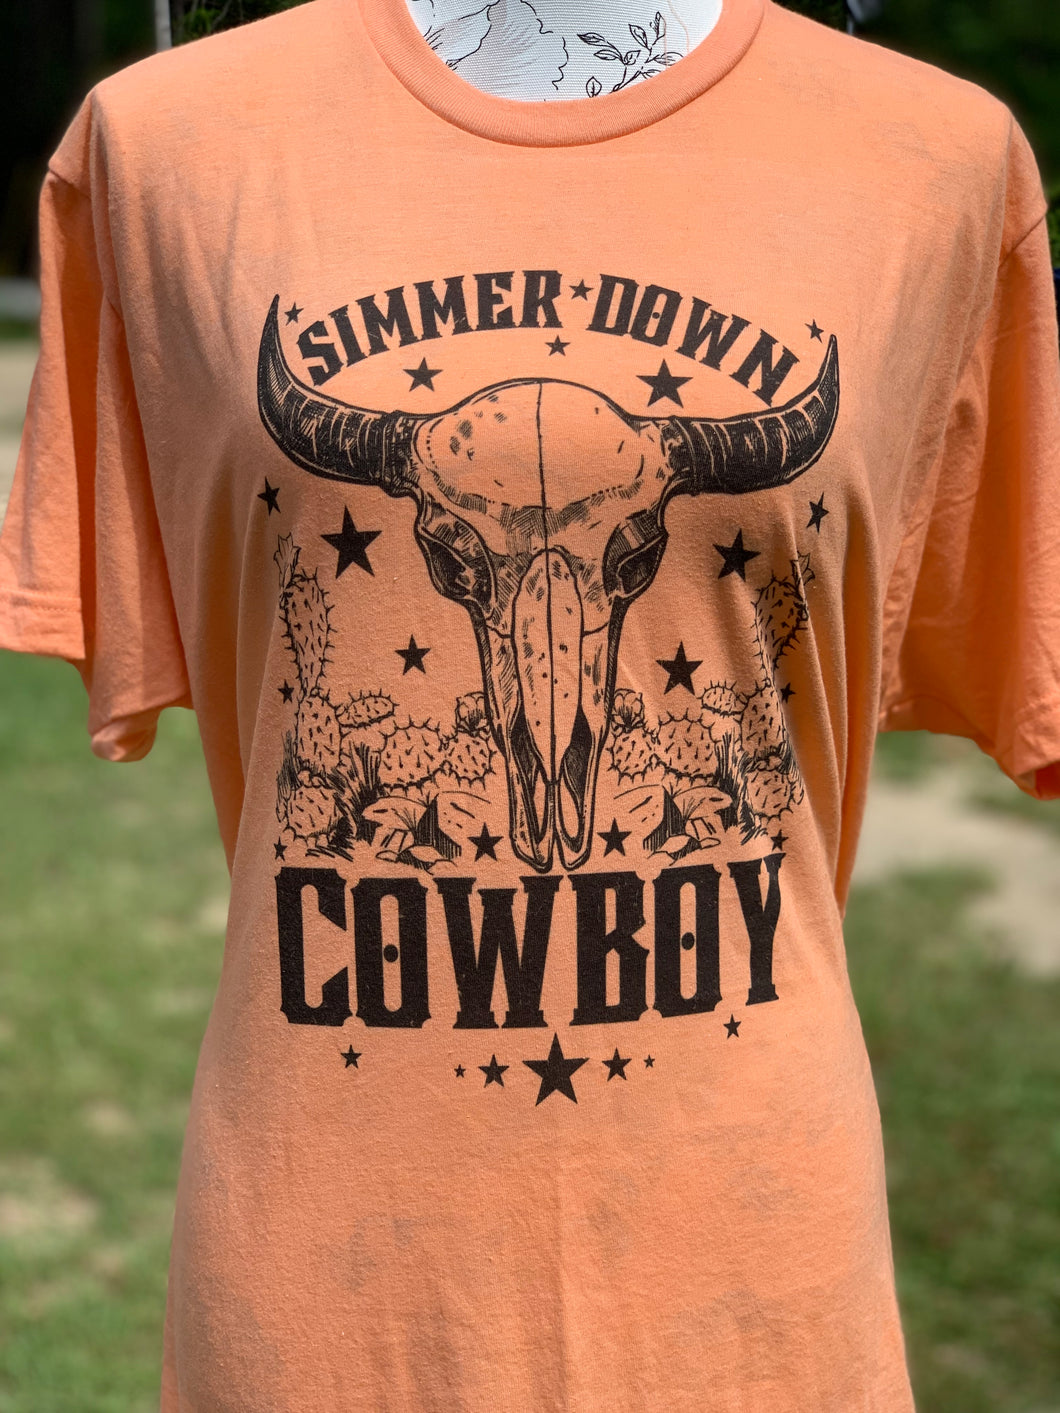 Simmer down Cowboy- No bleach